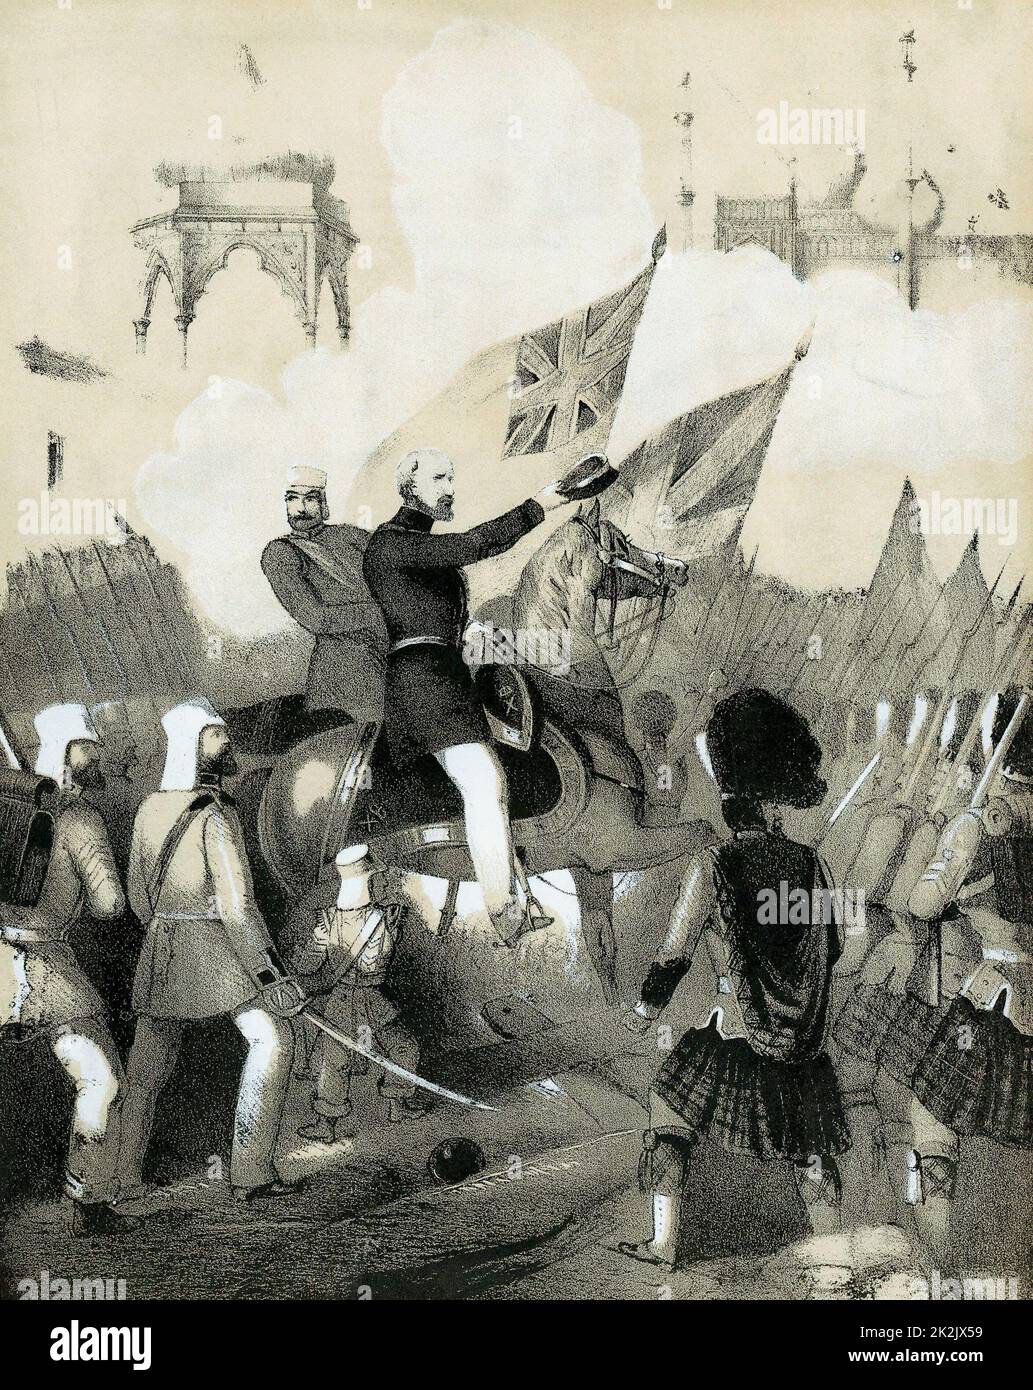 Indian (Sepoy) Mutiny 1857-1859: Robert Cornelis Napier (1810-90) britischer Militärkommandant, der triumpfende Einreise nach Delhi machte. Titelbild von Noten von 'The Battle March of Delhi'. Getönte Lithographie c1860 Stockfoto